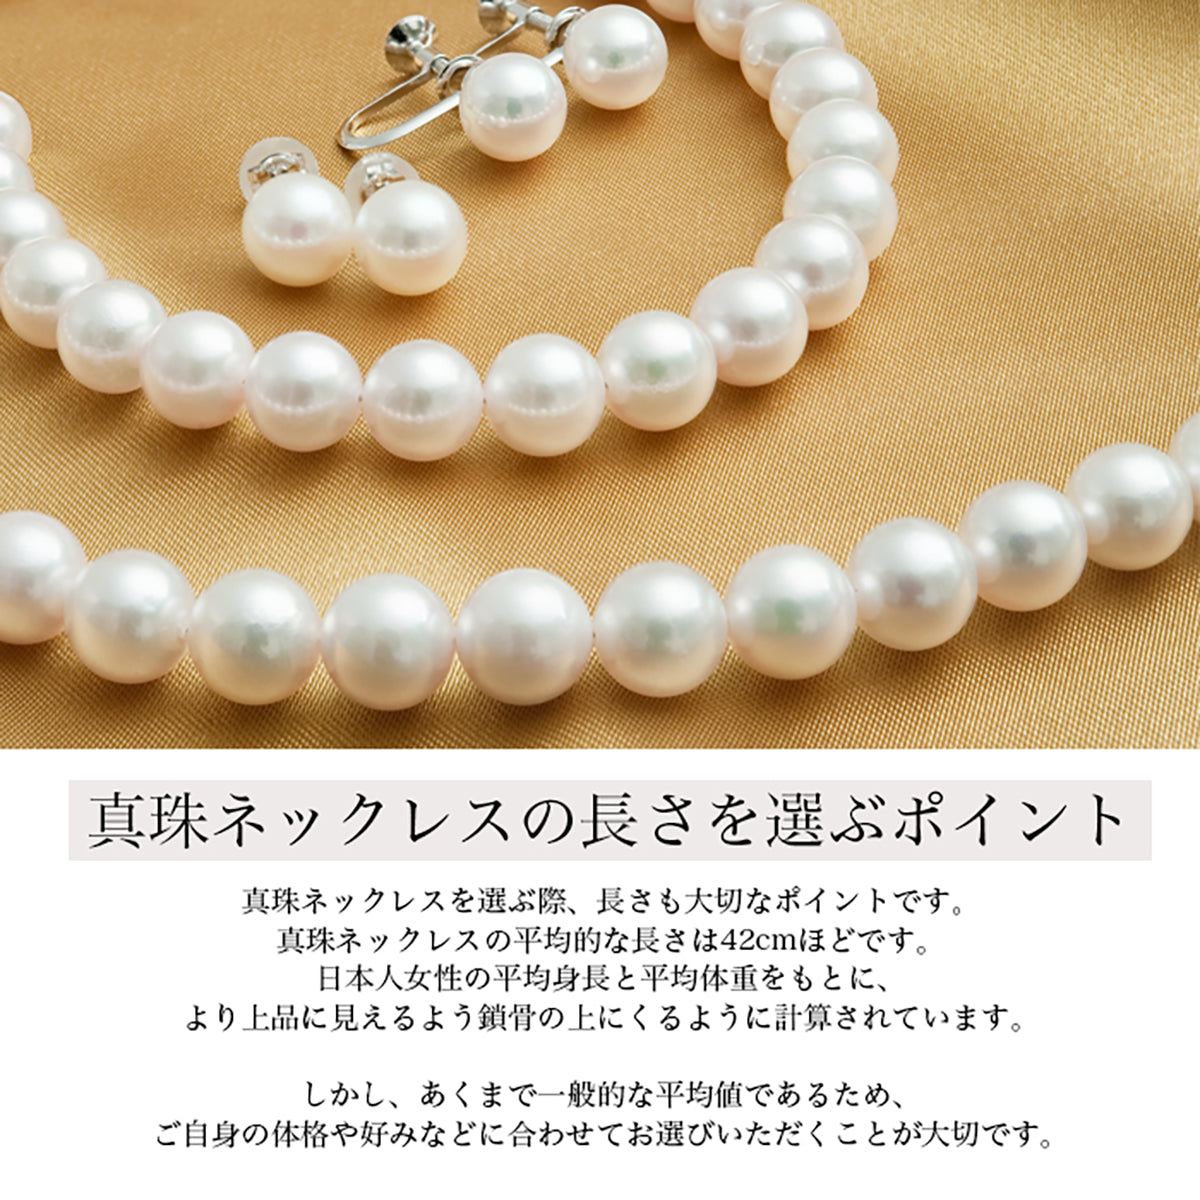 [金属过敏兼容] Akoya 珍珠正装项链 2 件套 [8.0-8.5 毫米]（耳环/非穿孔耳环）正装套装带真品证书和收纳盒